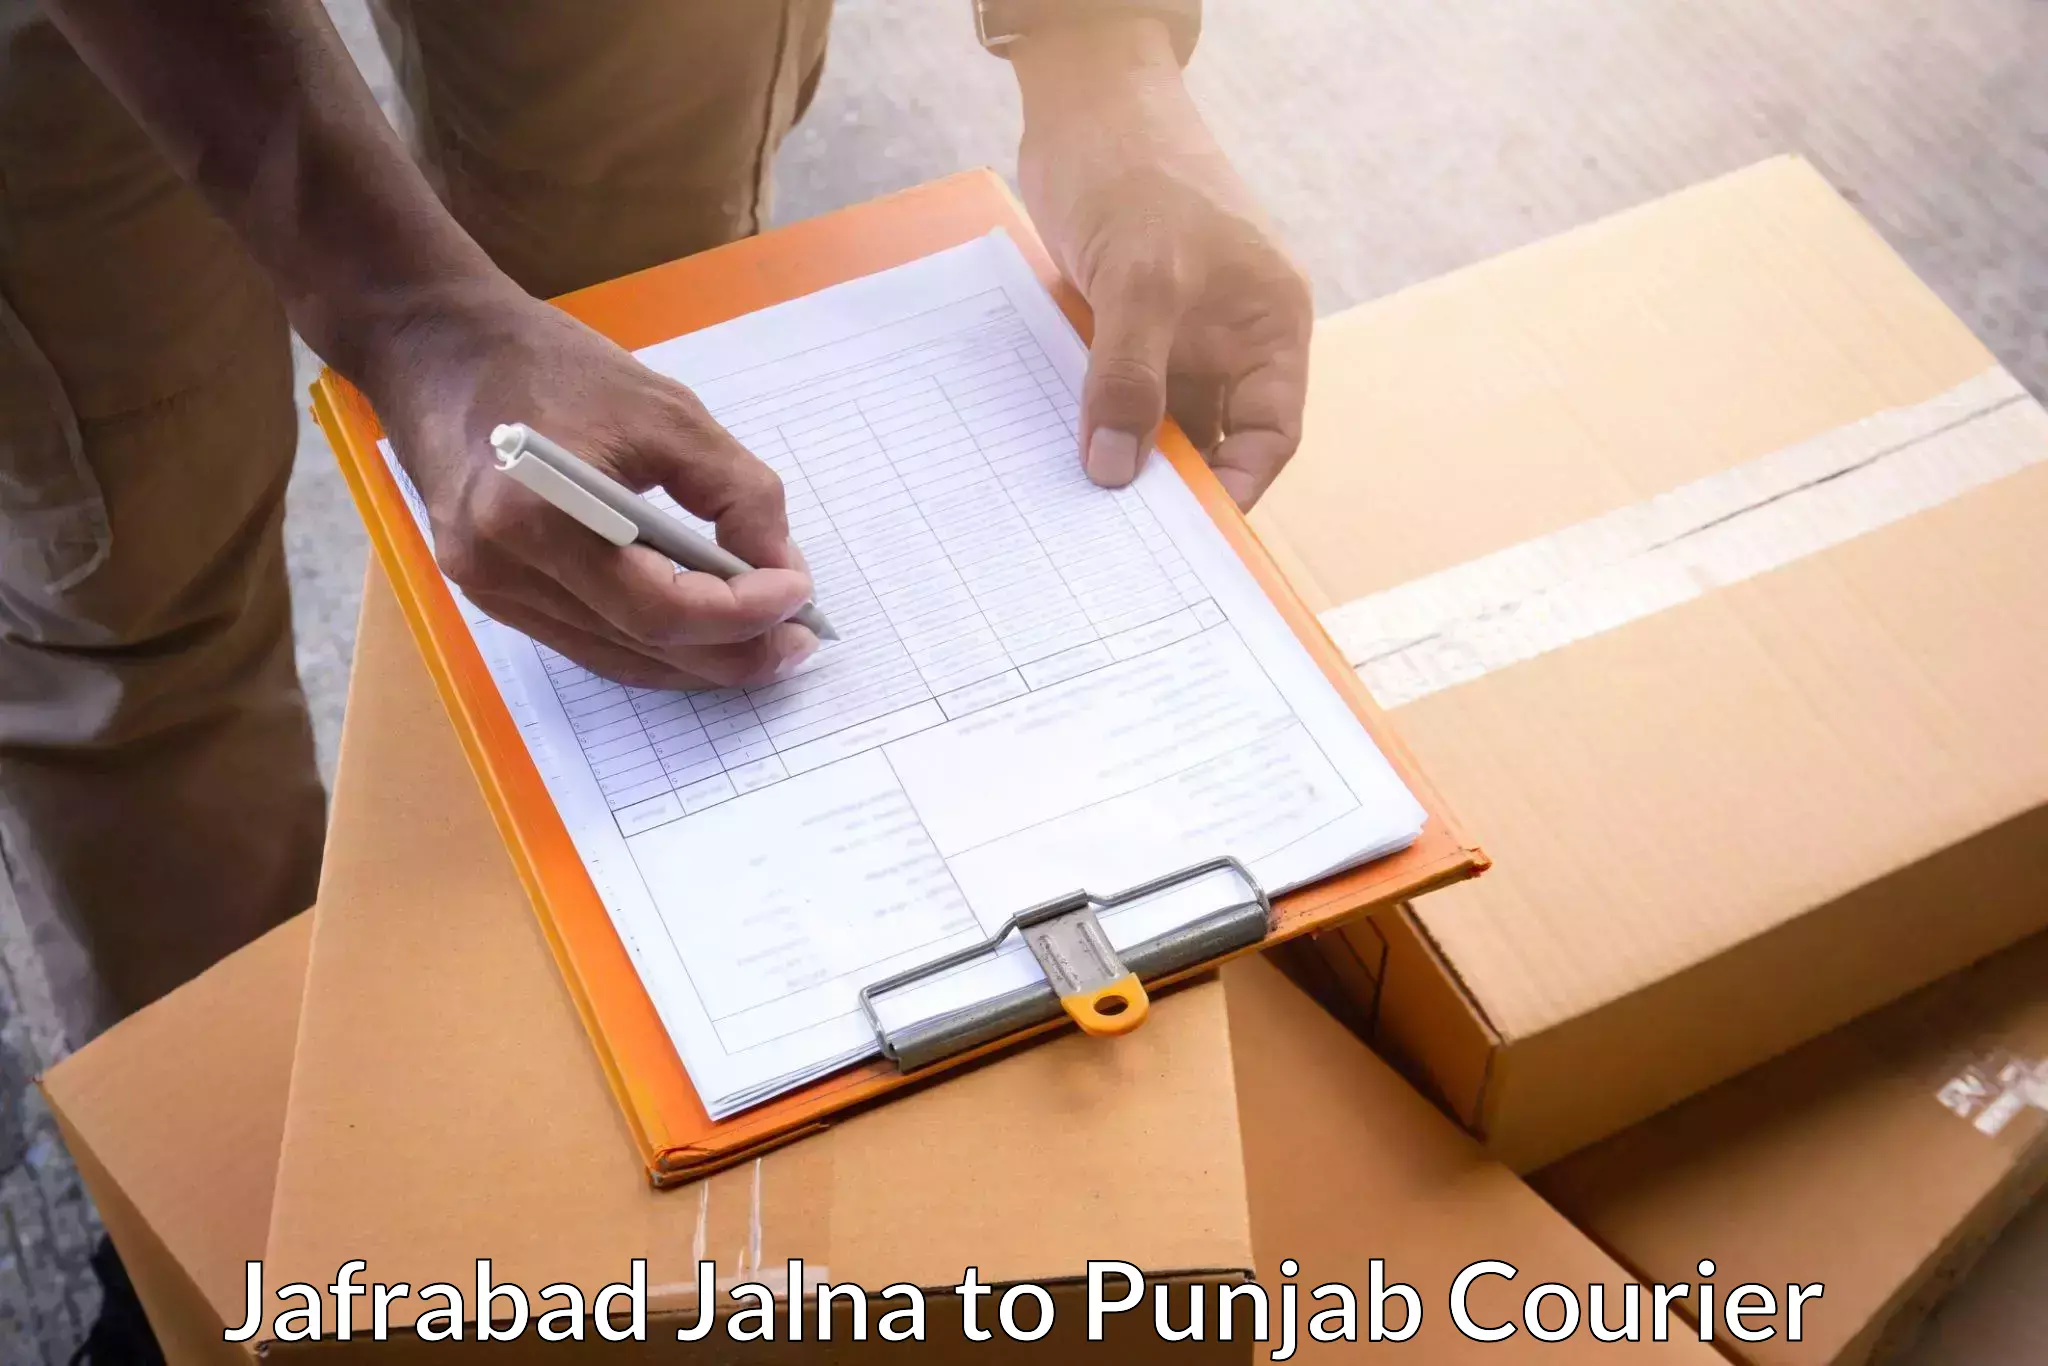 Expedited parcel delivery Jafrabad Jalna to Punjab